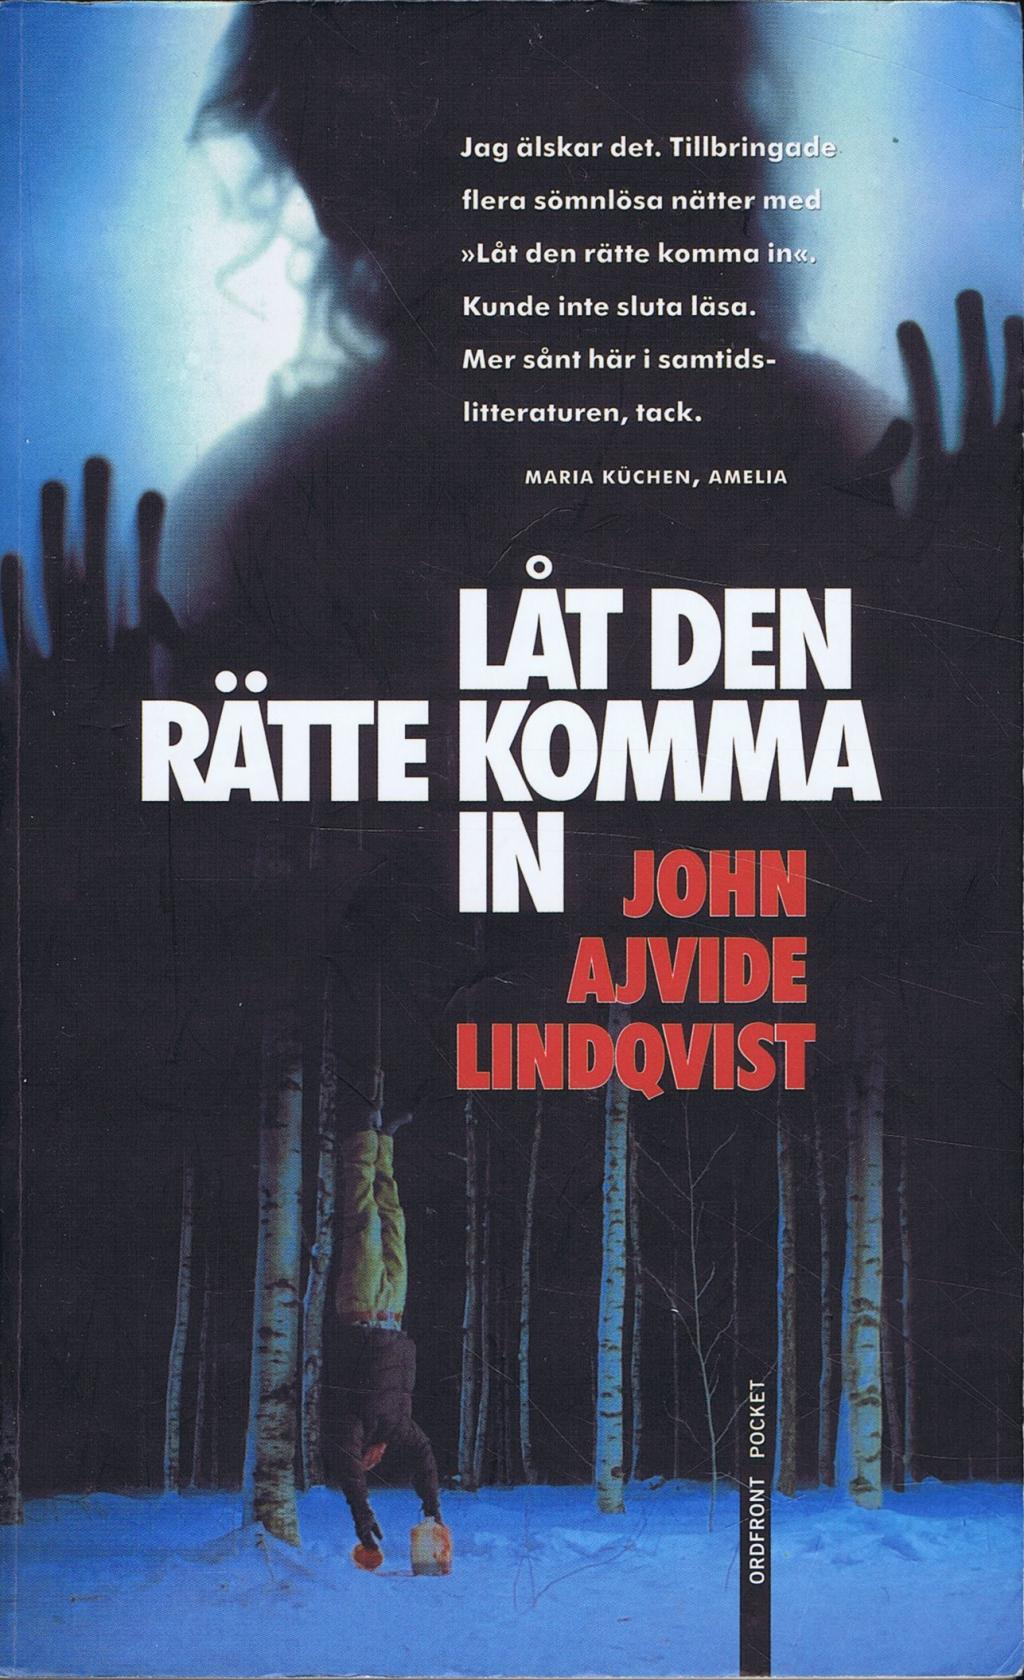 Låt den rätte komma in av John Ajvide Lindqvist (Pocket) - Fantasyhyllan1024 x 1680